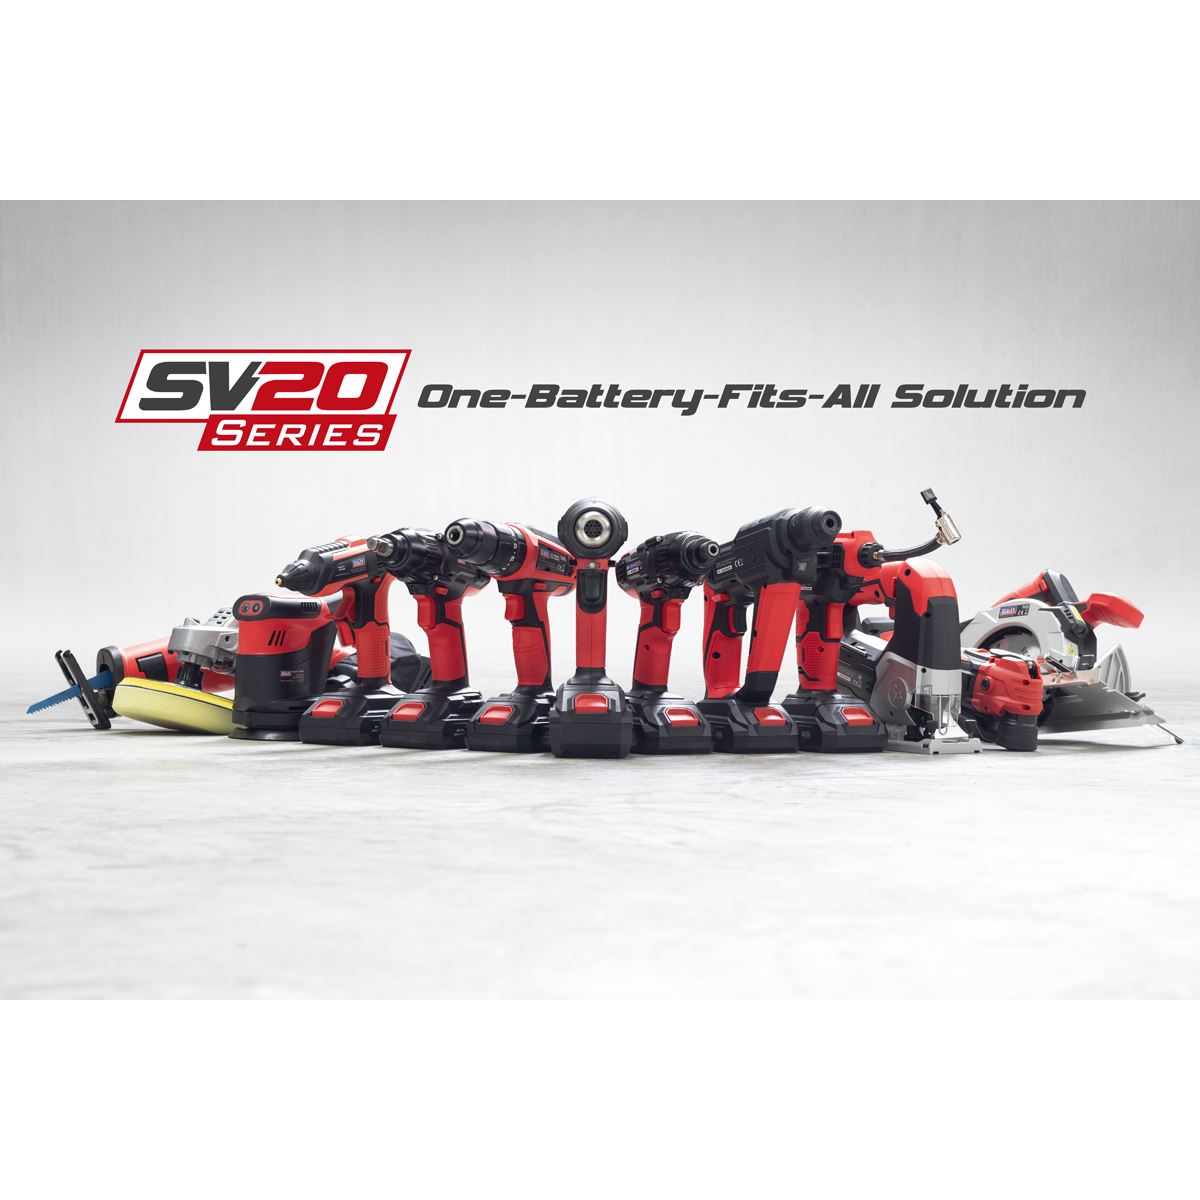 Sealey Cordless 3-in-1 Garden Tool Kit 20V SV20 Series – 2 Batteries